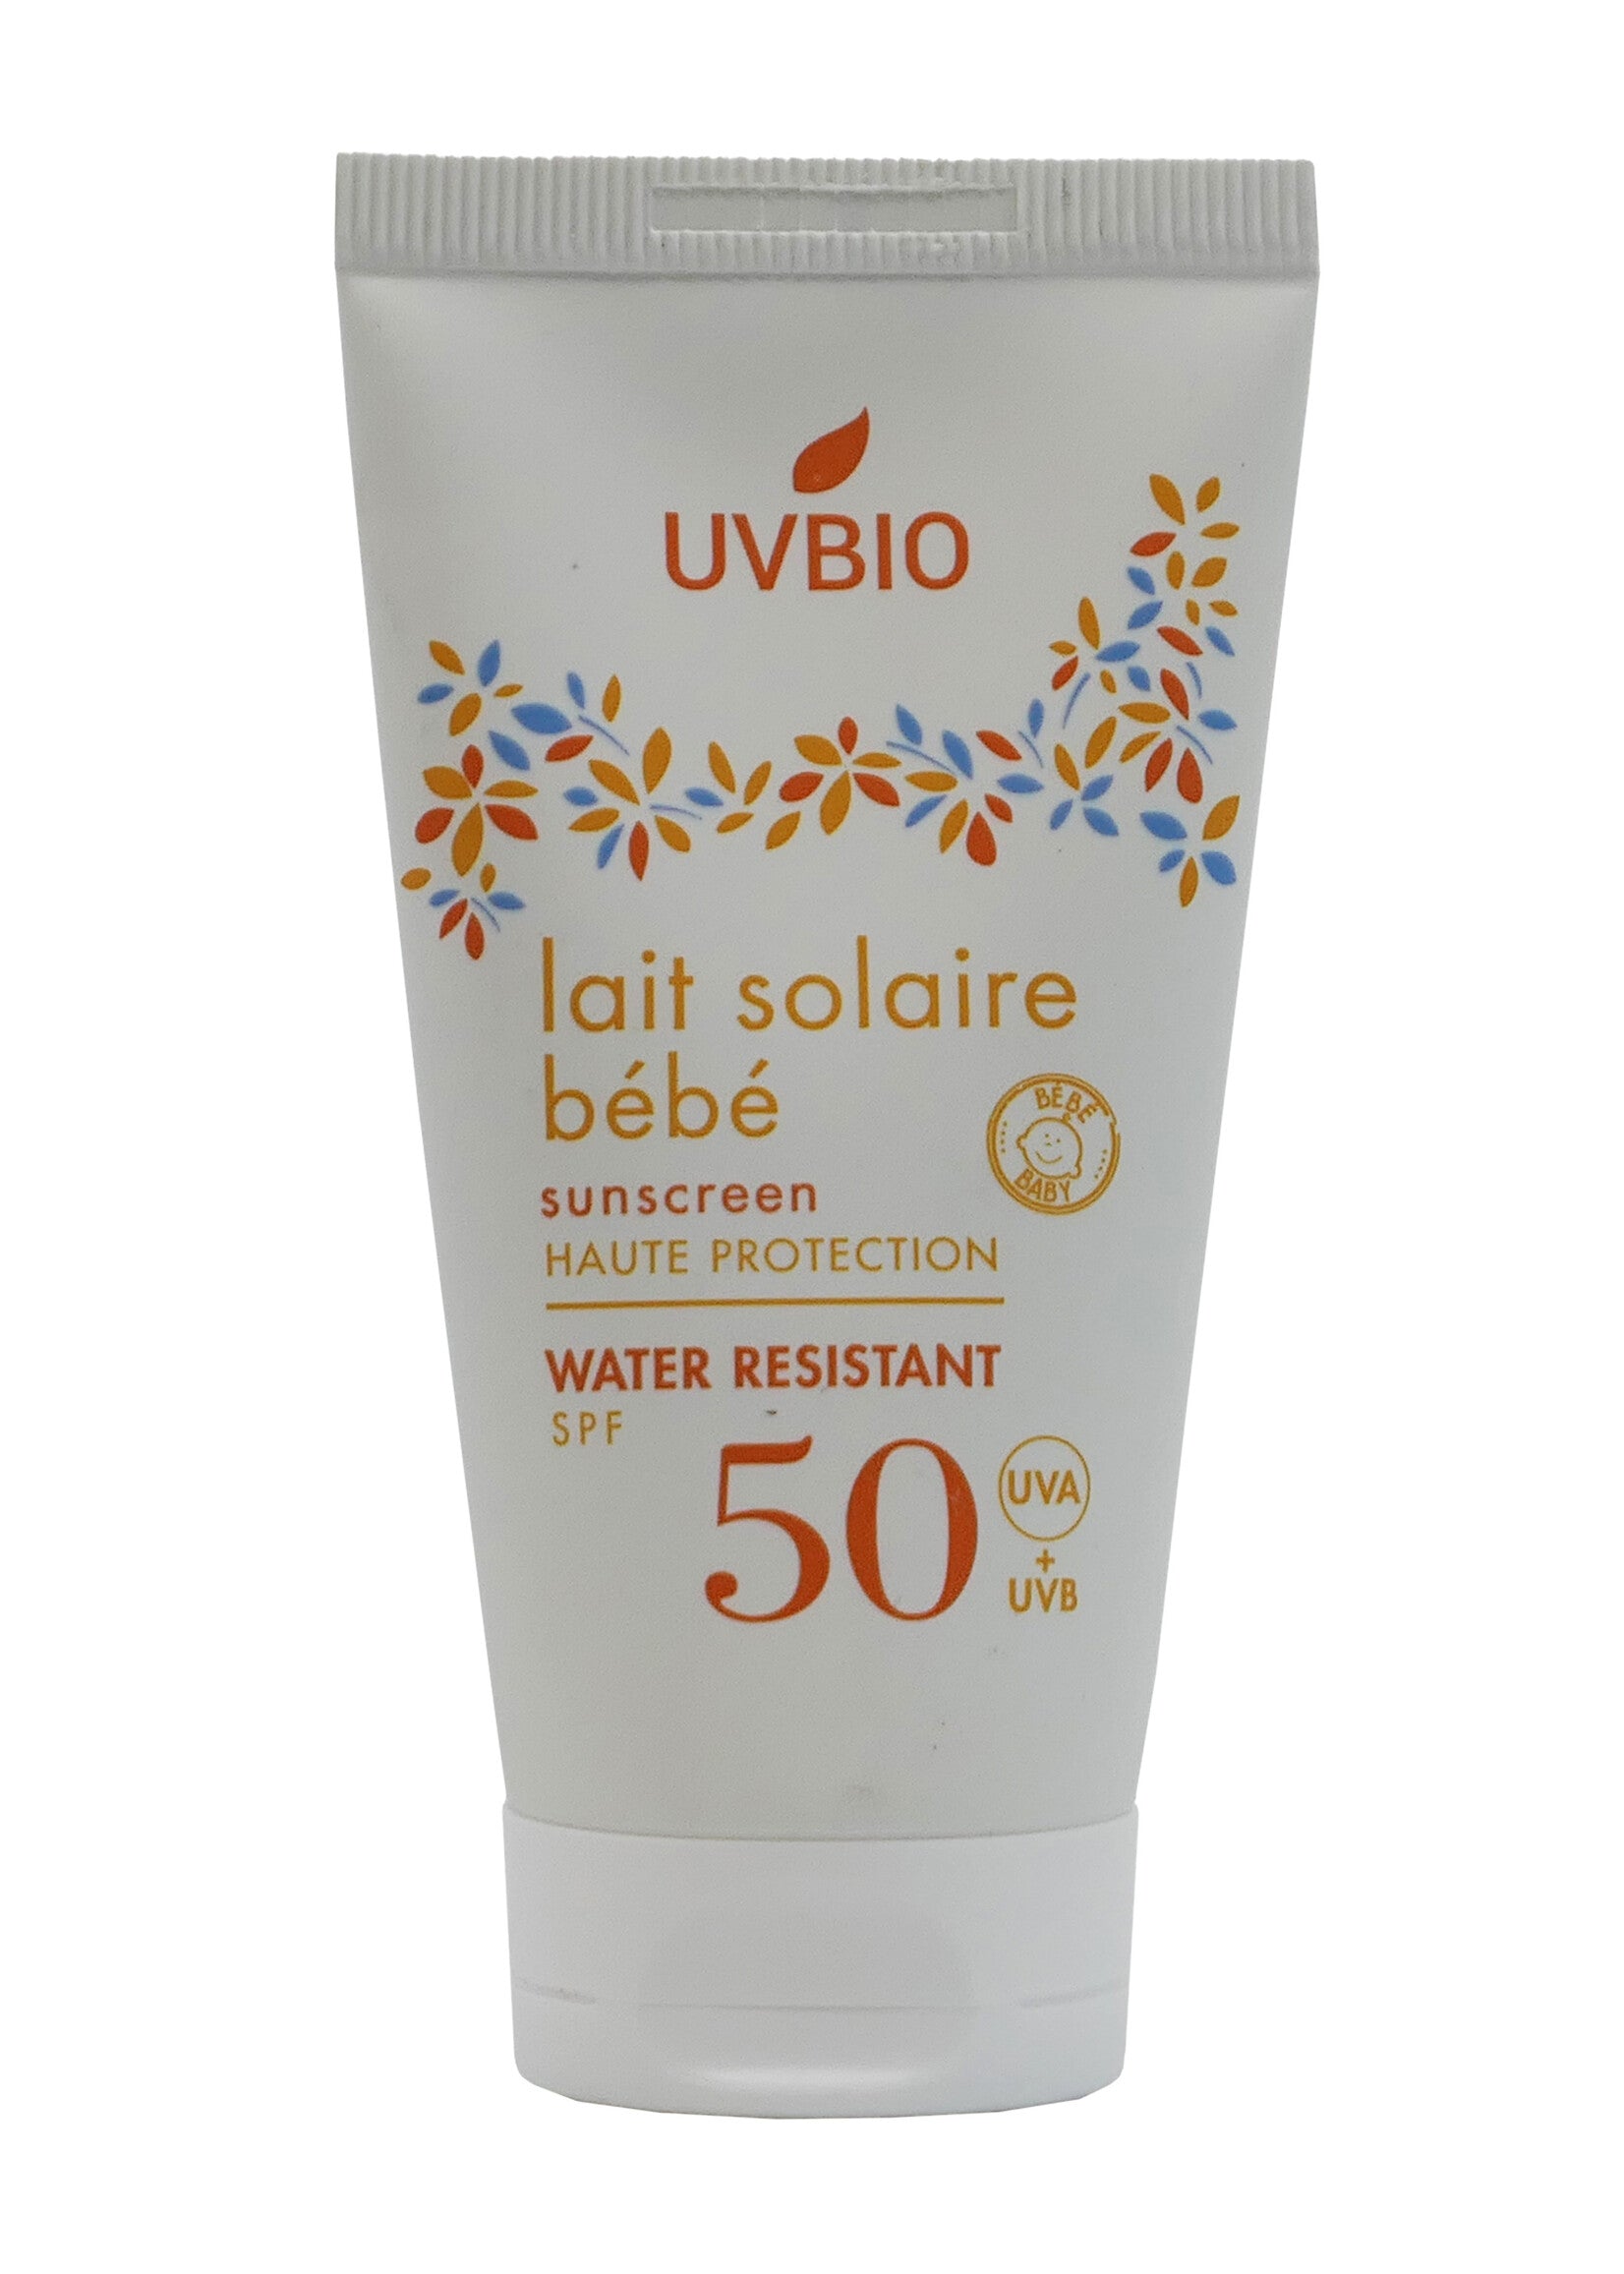 Bébé Bio SPF 50 UVBIO zonnelotion met kokosolie- en zoete amandelolie-extracten biedt een hoge natuurlijke bescherming tegen UVA- en UVB-stralen voor baby's en het hele gezin.